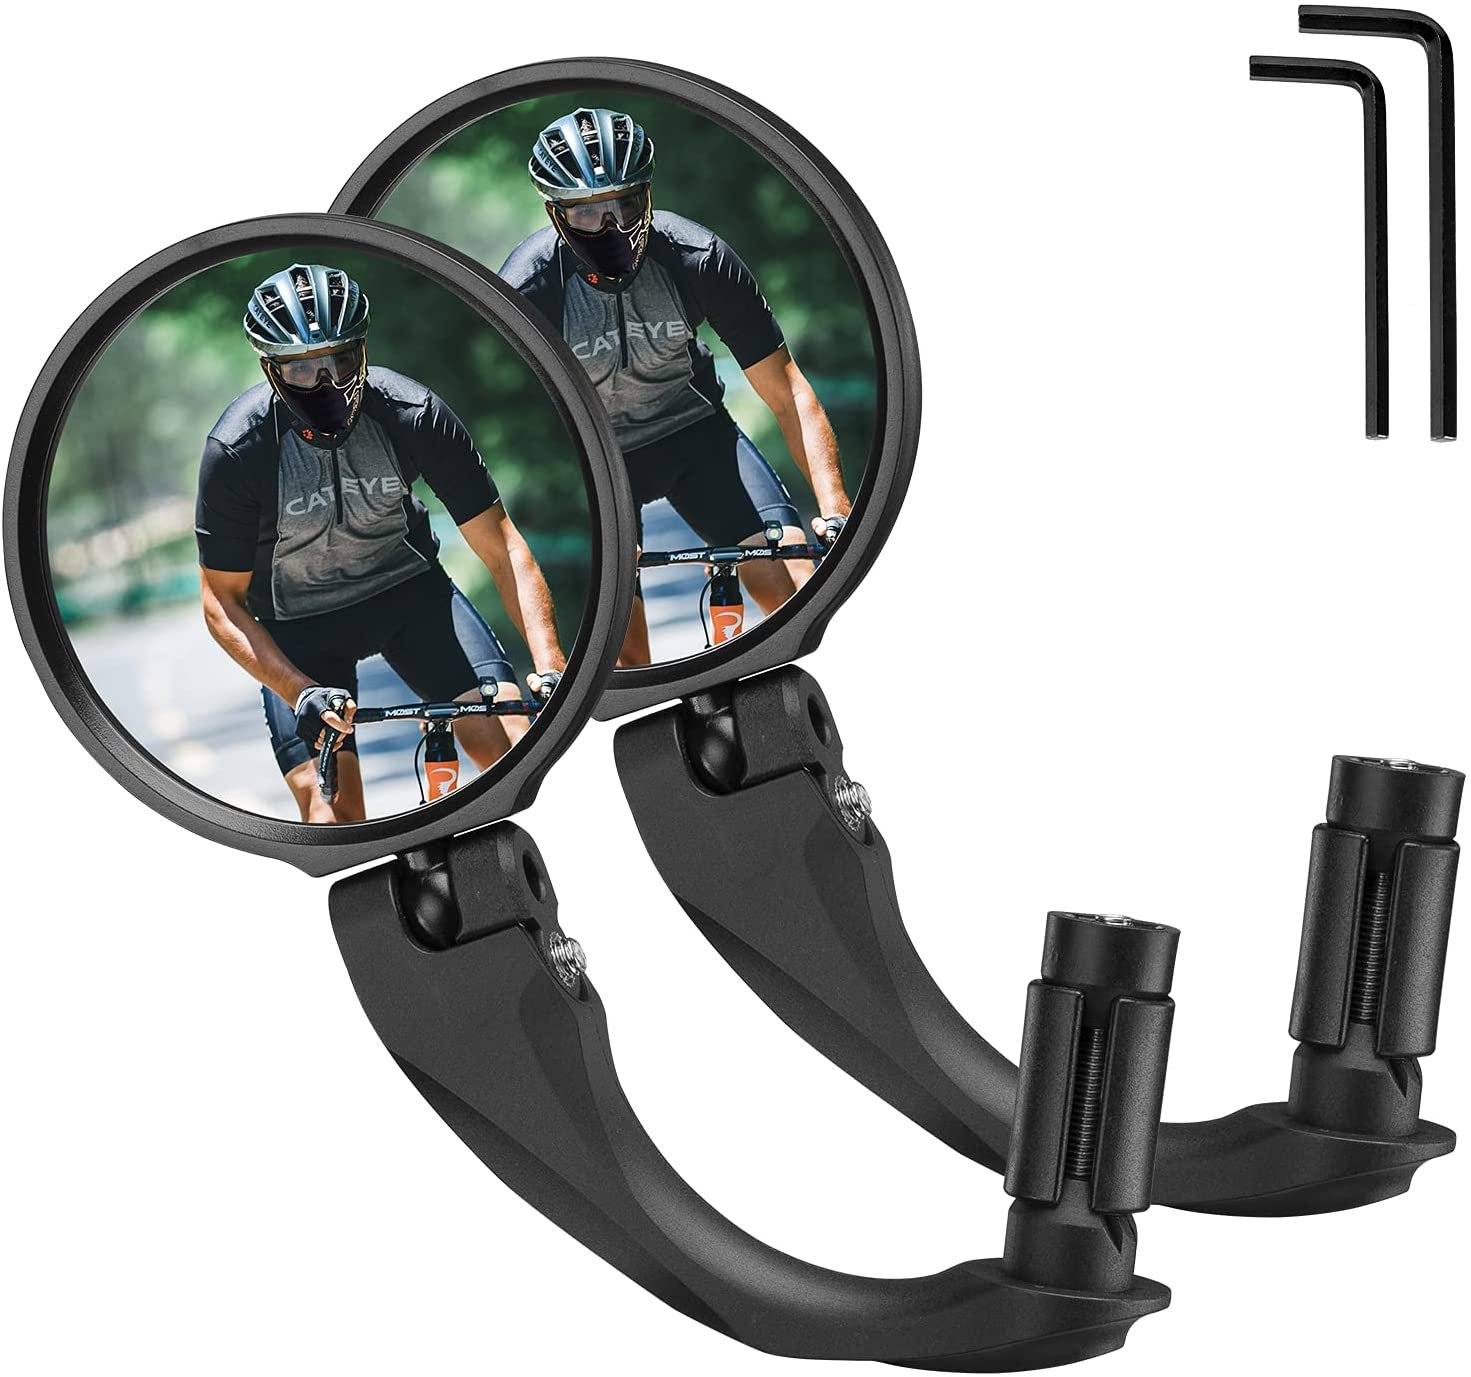 Зеркало велосипедное RockBros, акриловое, заднего вида, круглое 7,5 см, длина ручки 9 см, черный, FK-272